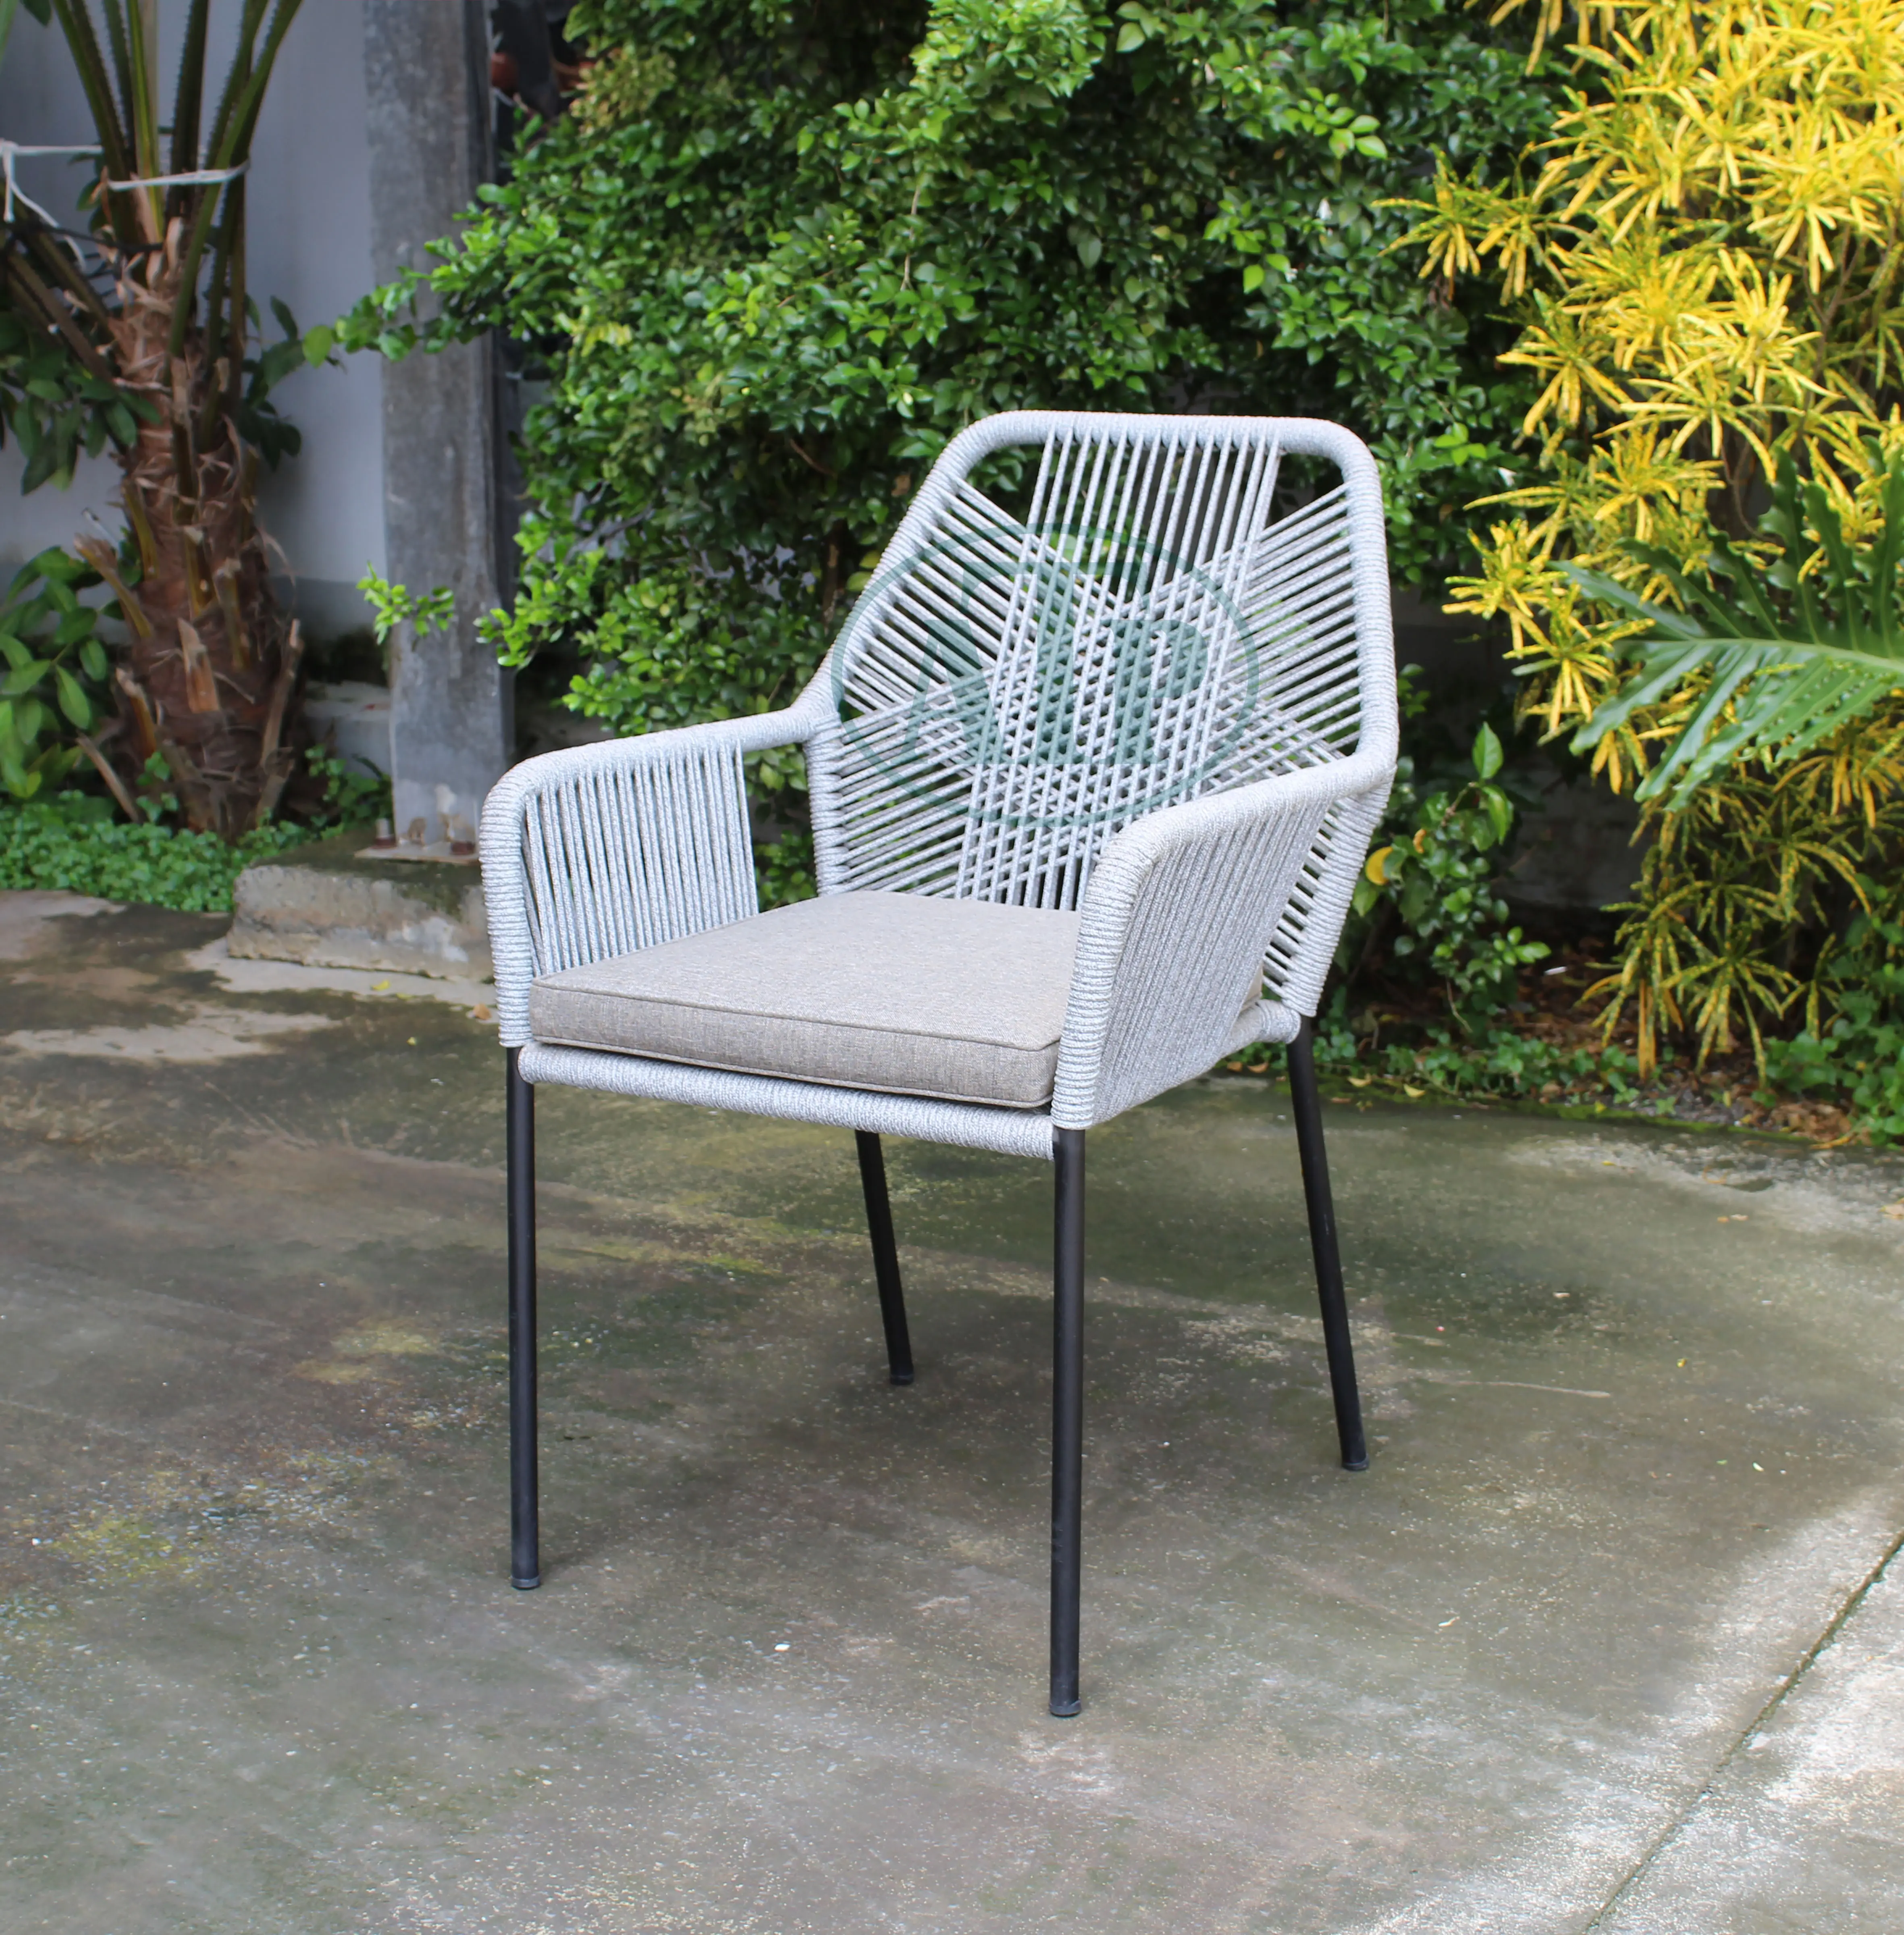 Moda creativa al aire libre con muebles de cuerda Diseño moderno al aire libre hecho por la fabricación de Vietnam